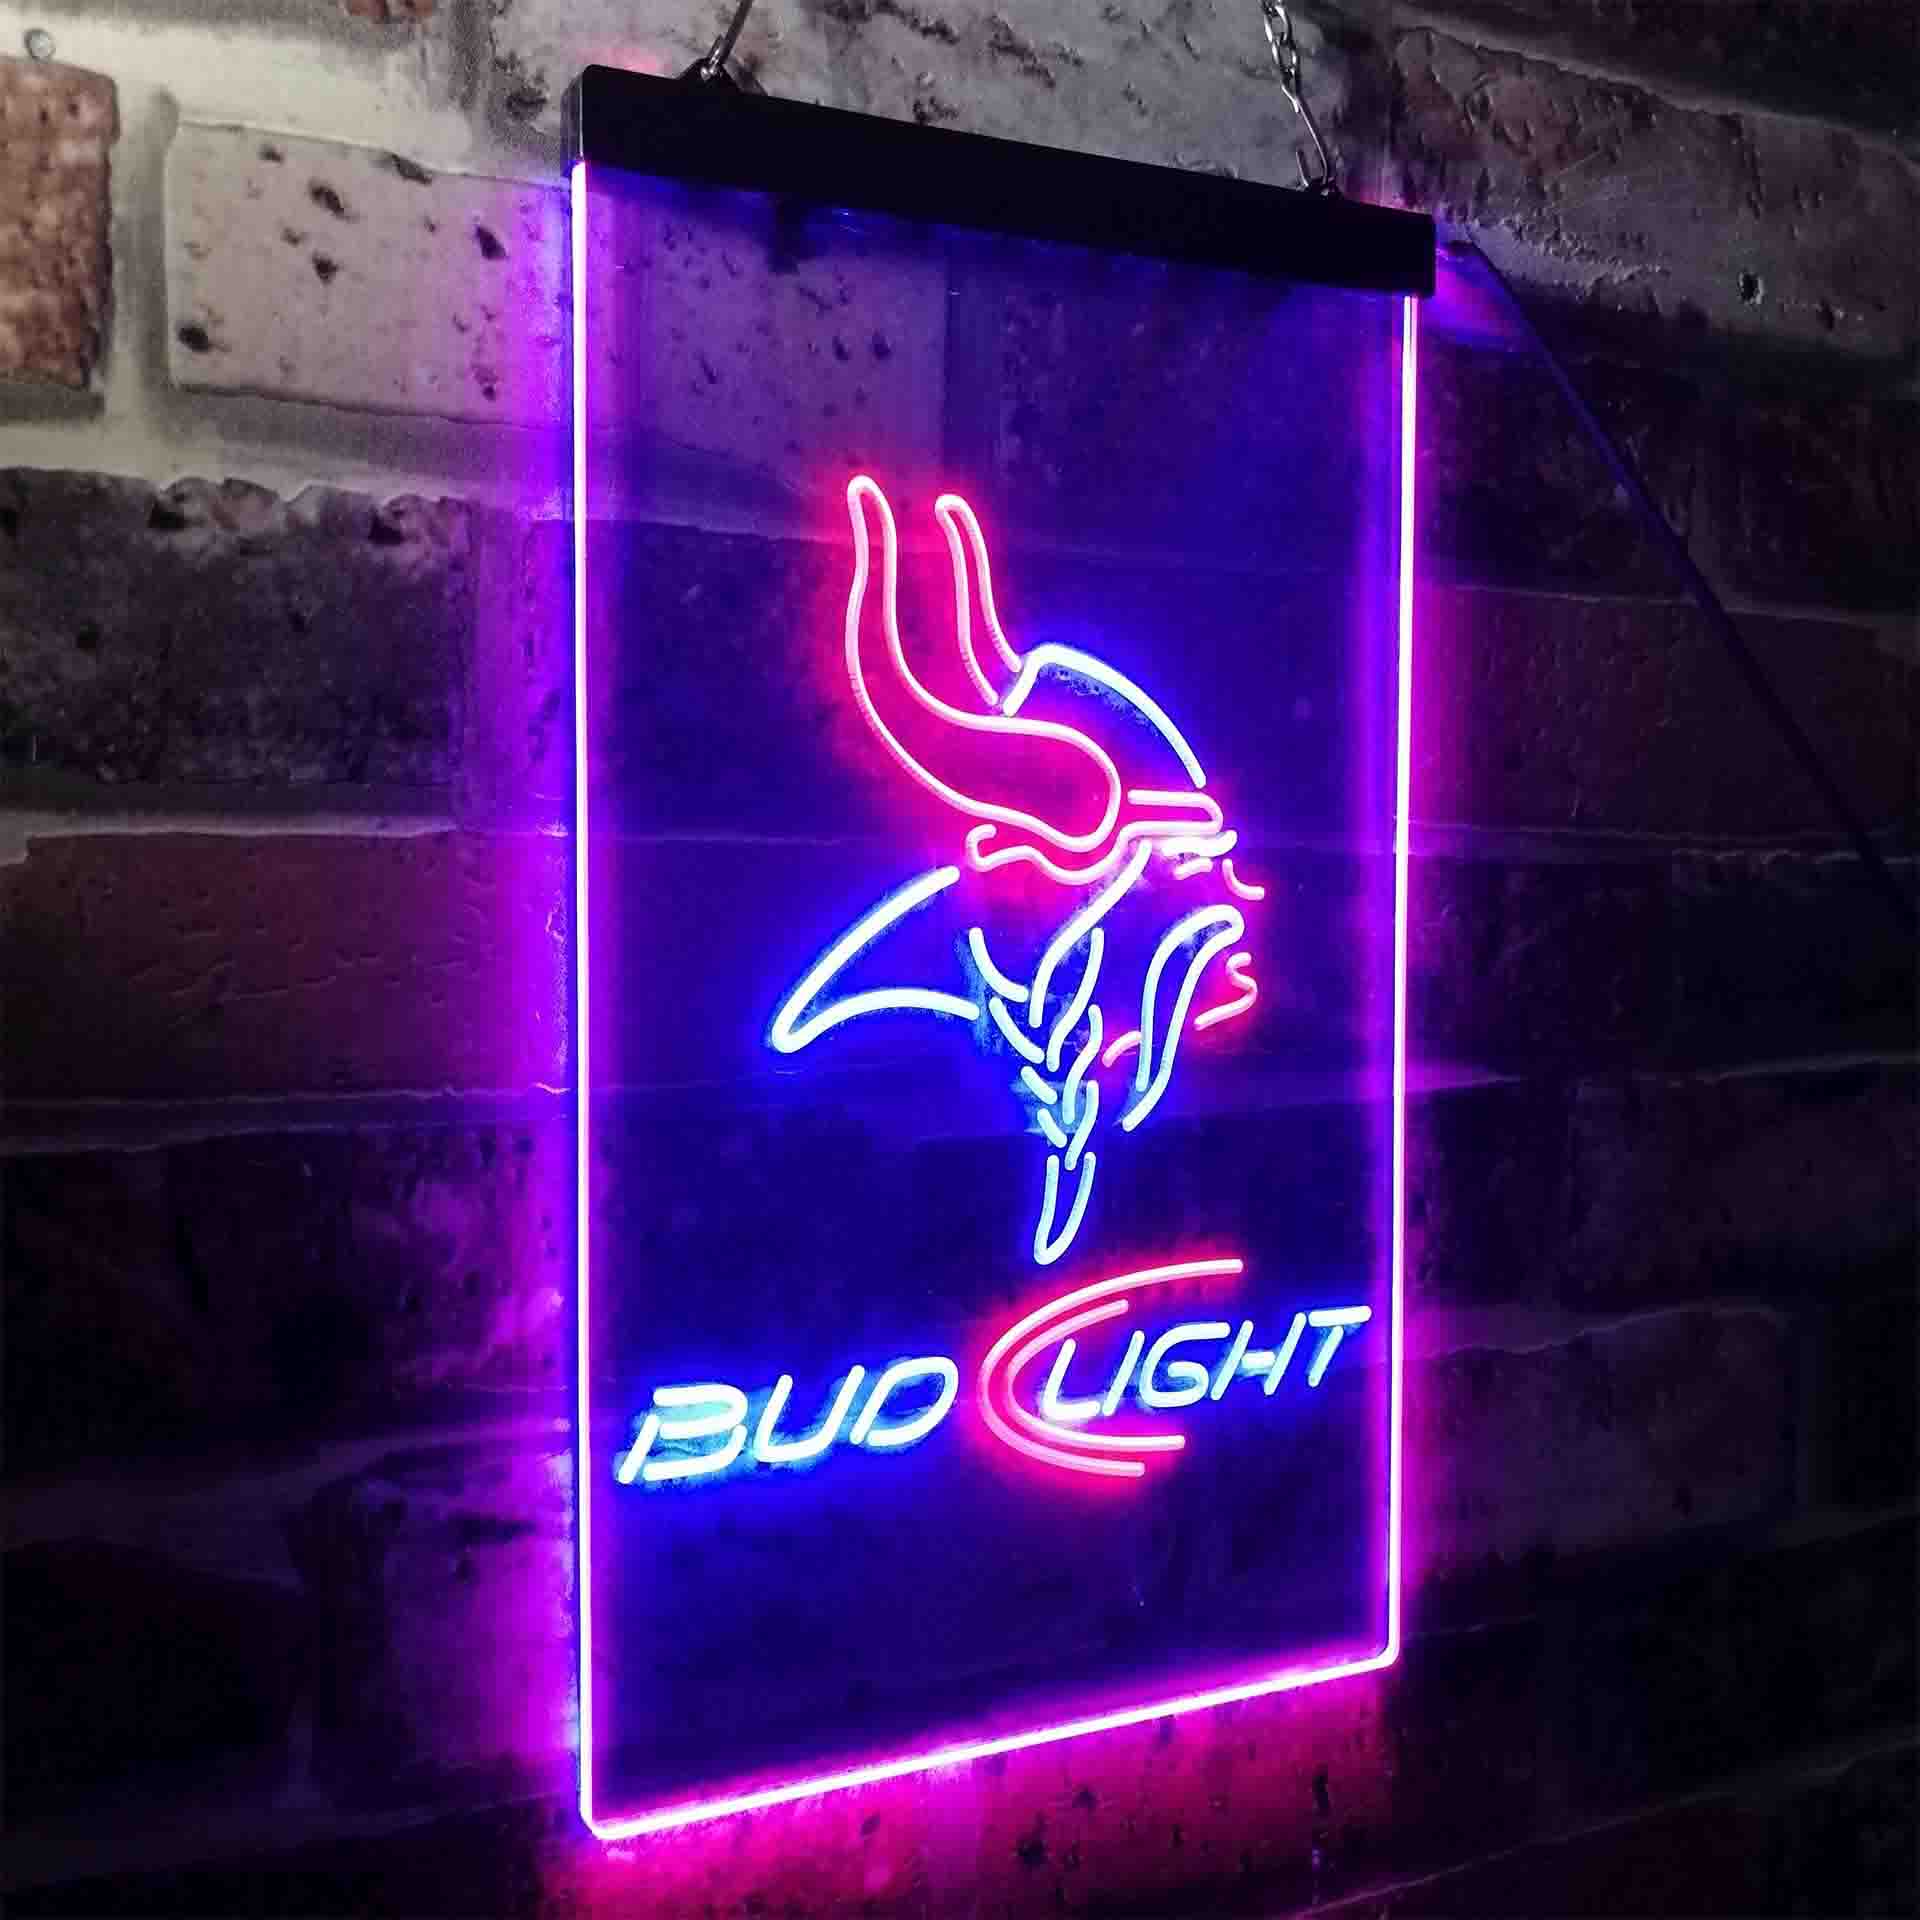 Minnesota Vikings Bud Light Neon-Like LED Sign